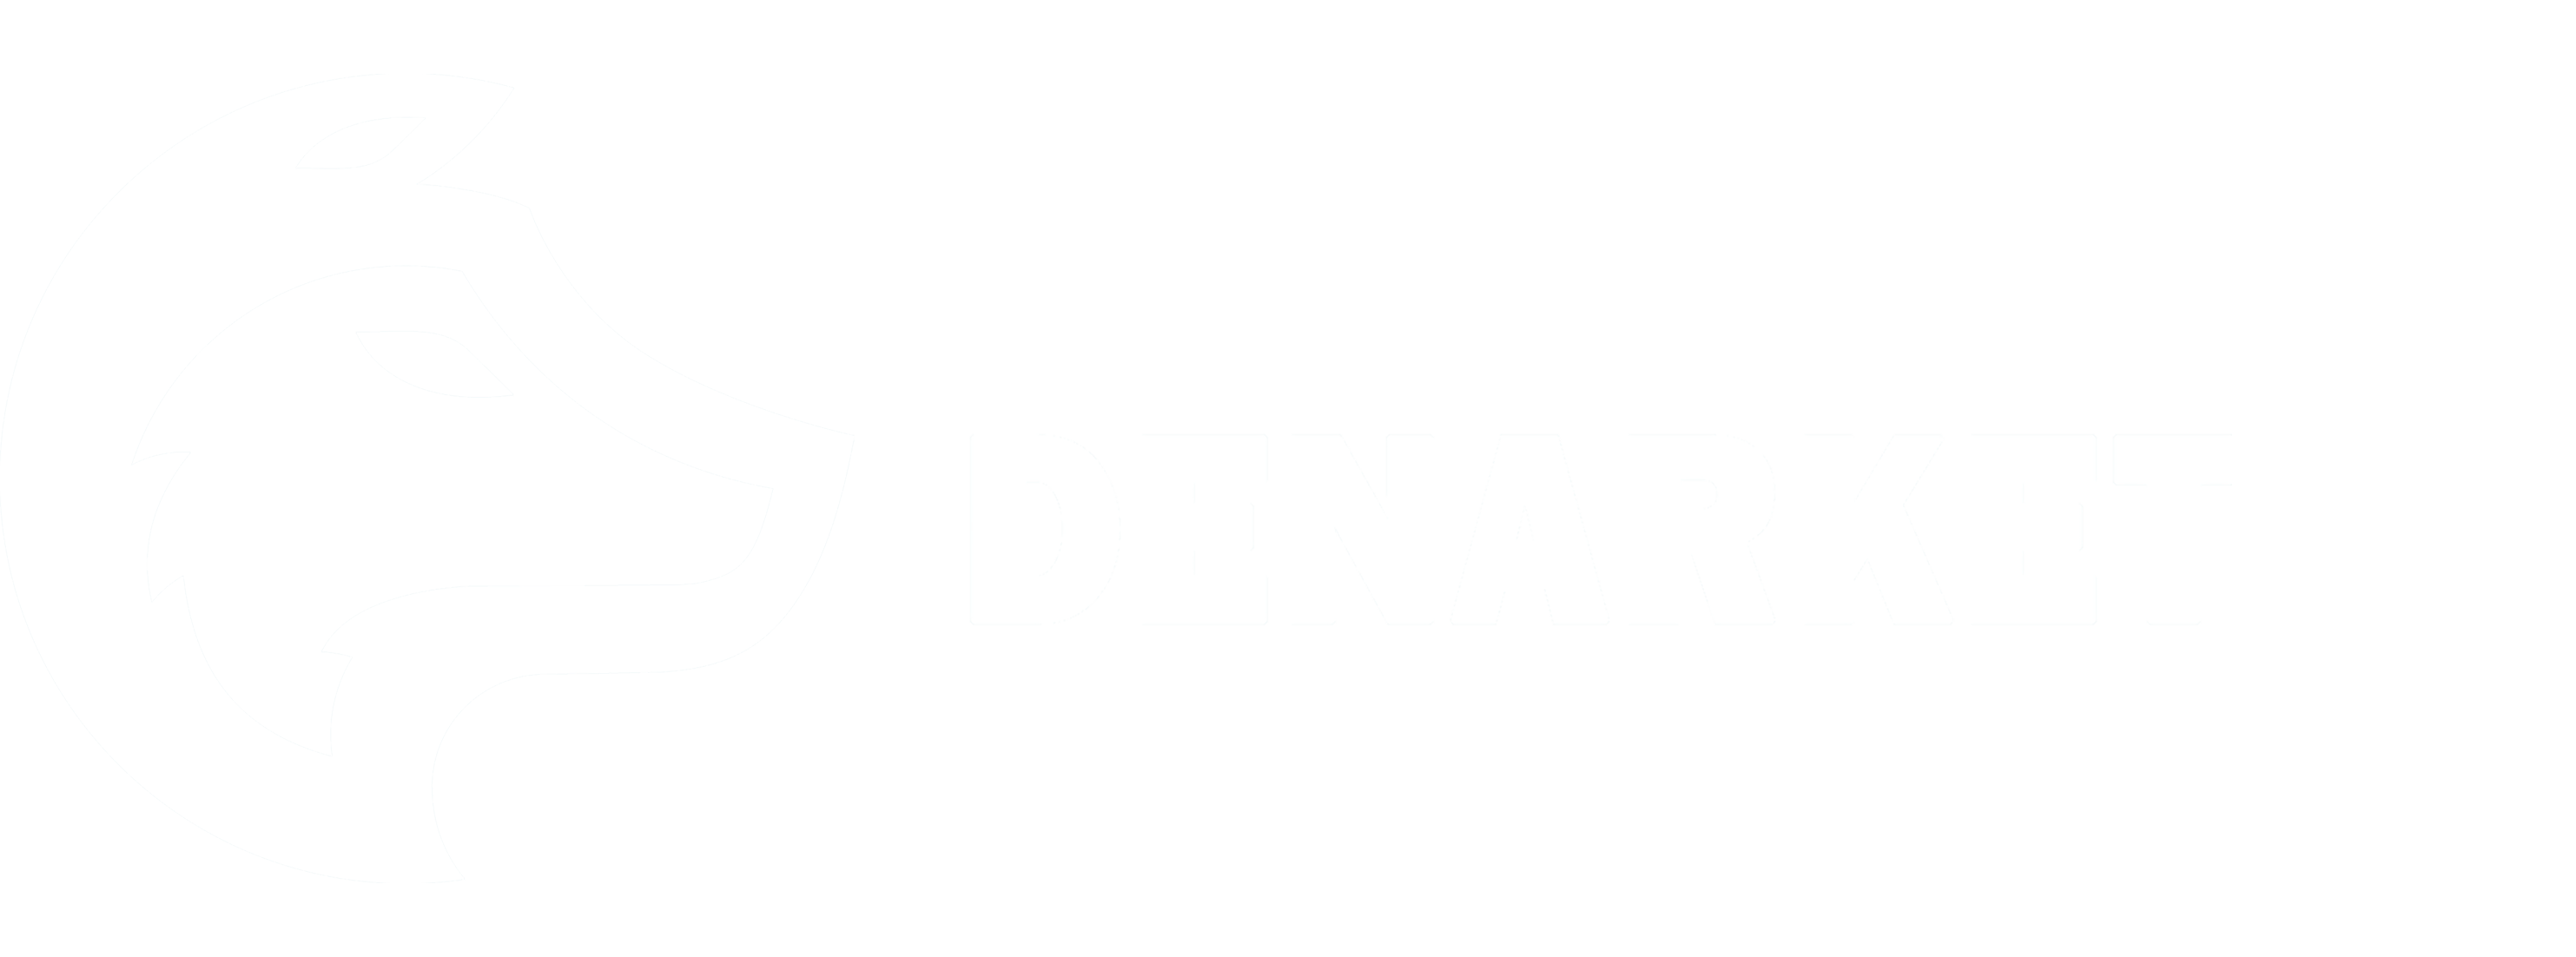 denarket logo in header | wolfpack of digital market